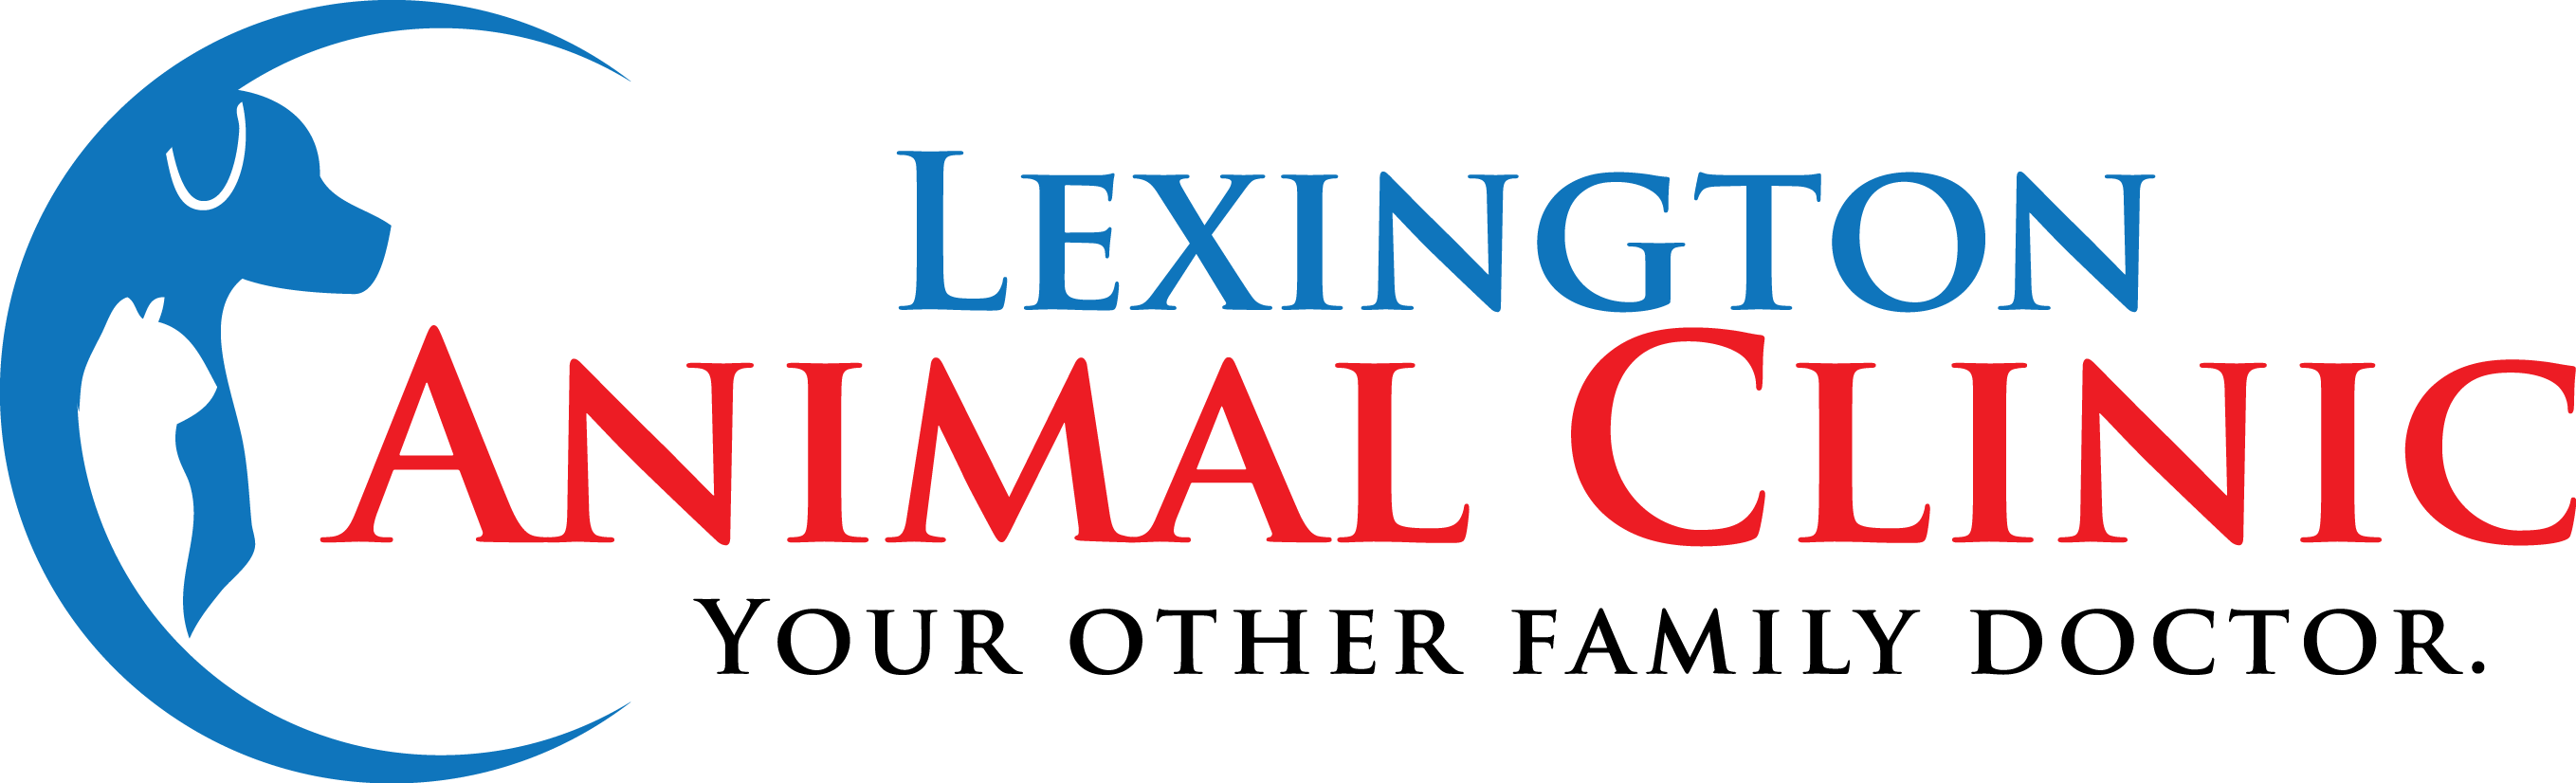 Lexington Animal Clinic